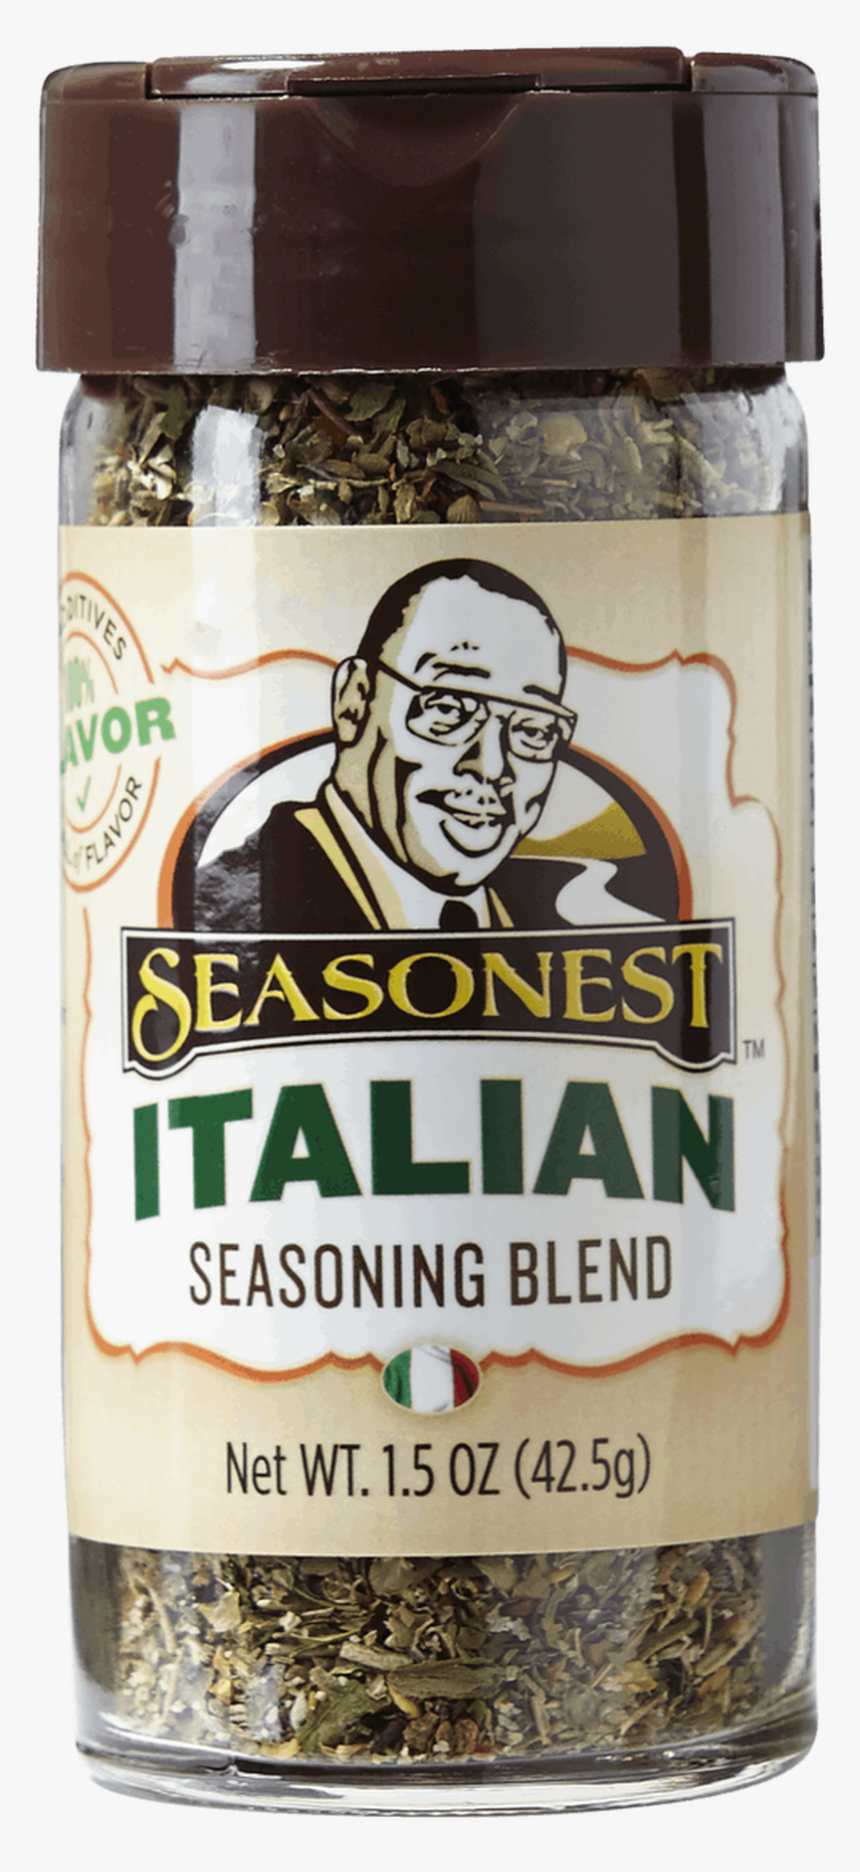 Seasonest Italian Spice Blend - Bottle, HD Png Download, Free Download